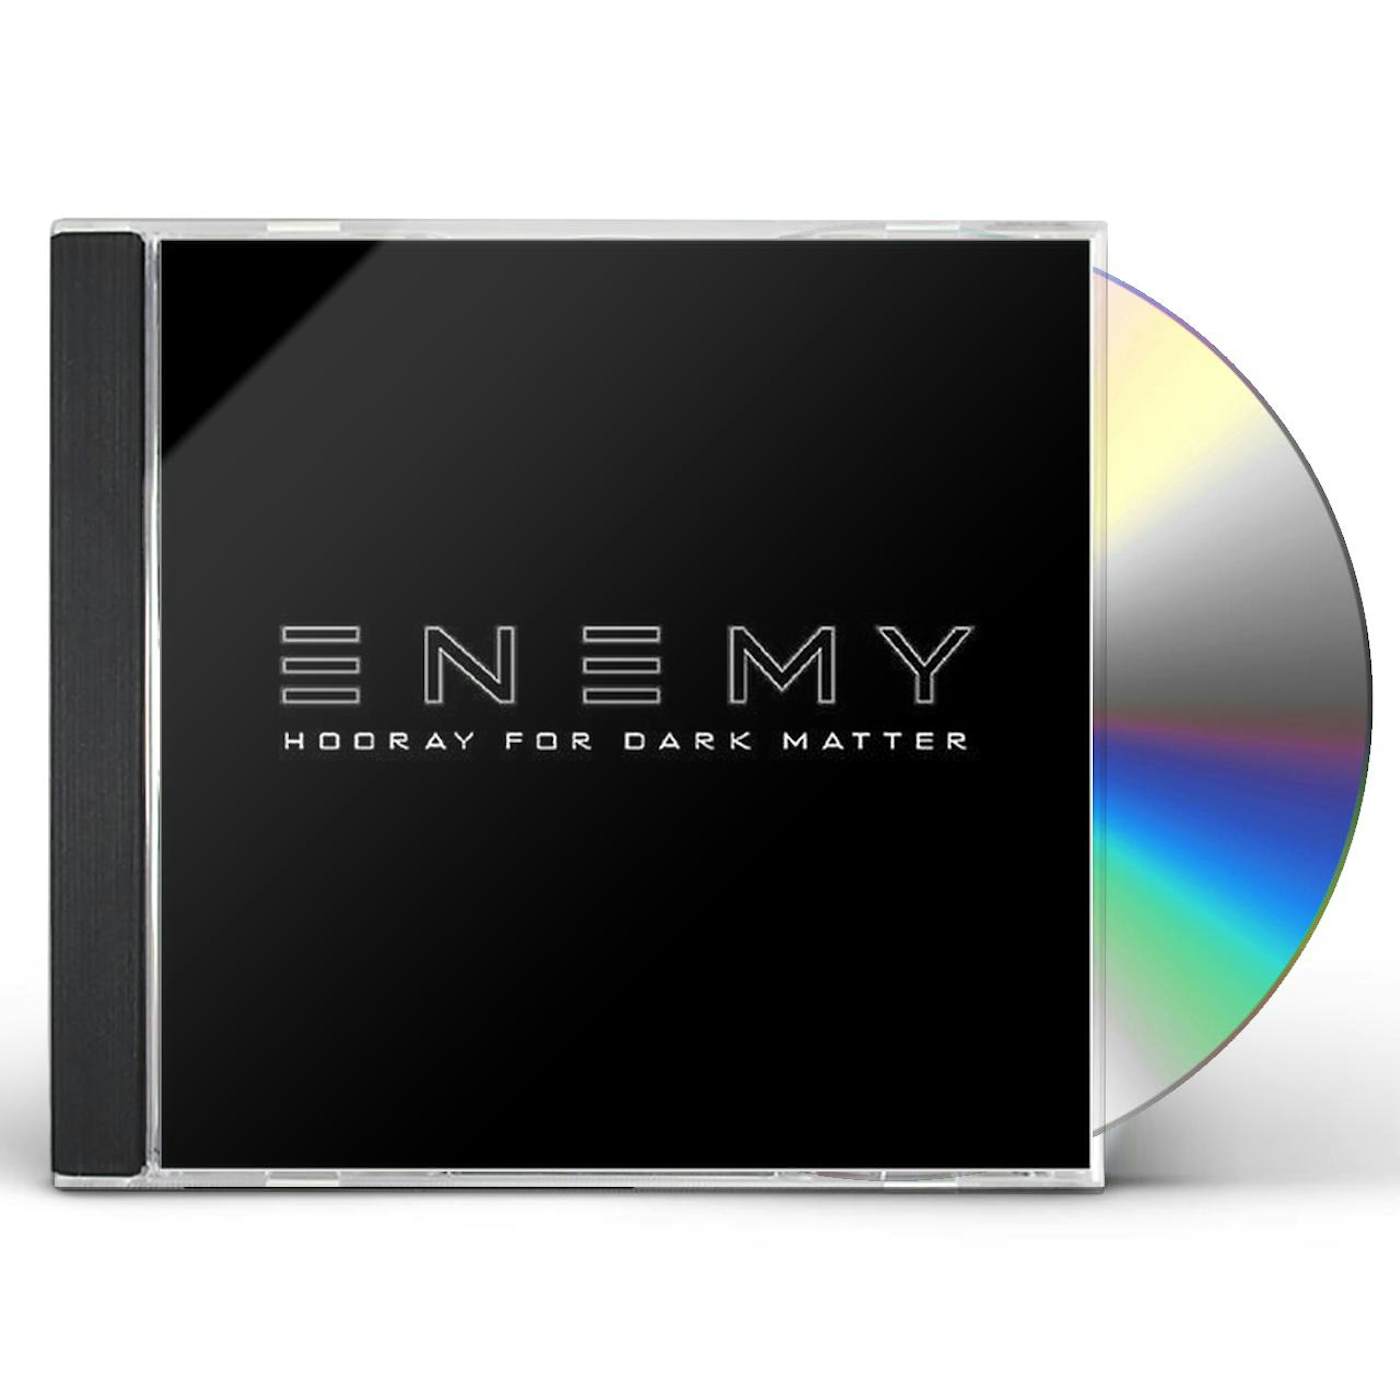 The Enemy HOORAY FOR DARK MATTER CD